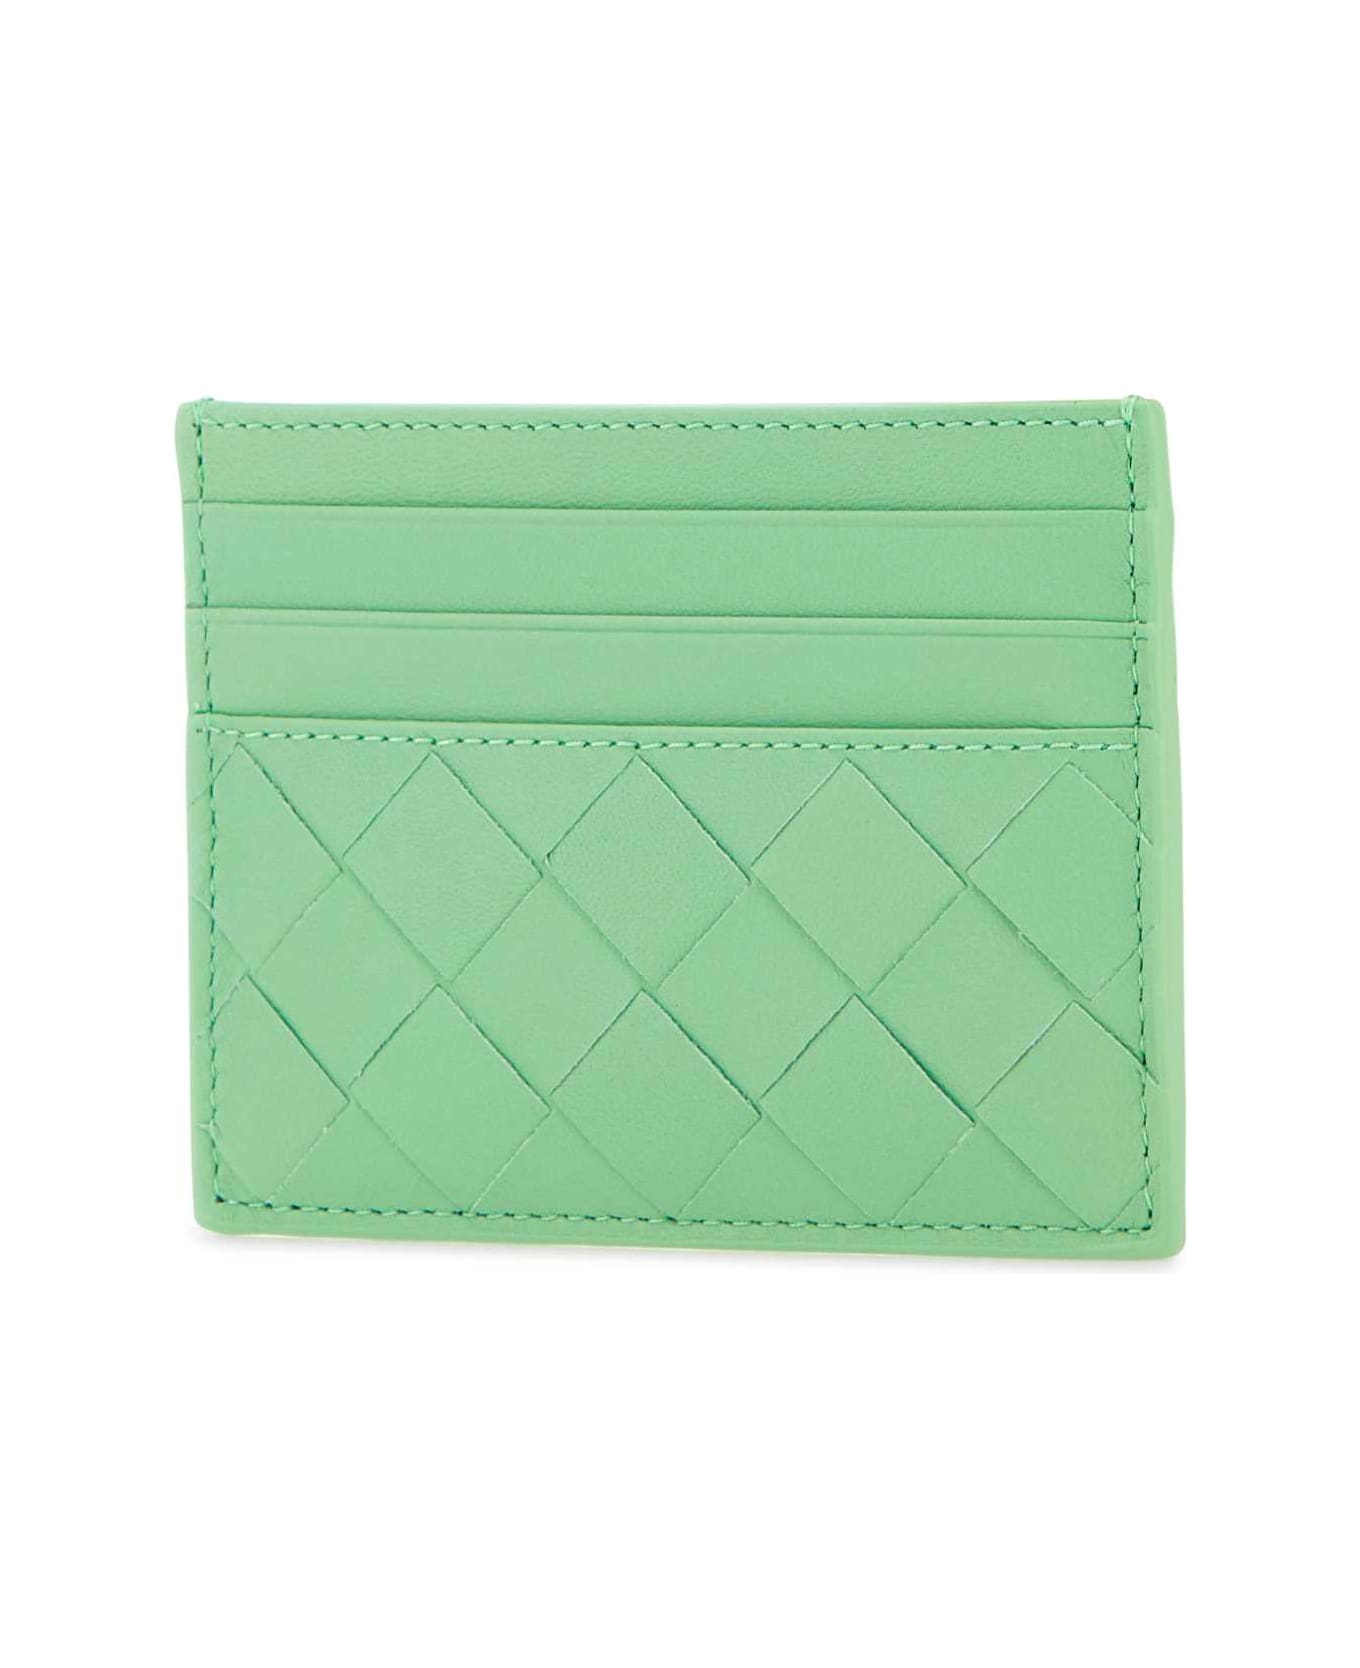 Bottega Brand Veneta Mint Green Leather Card Holder - SIRENMINTGOLDEN